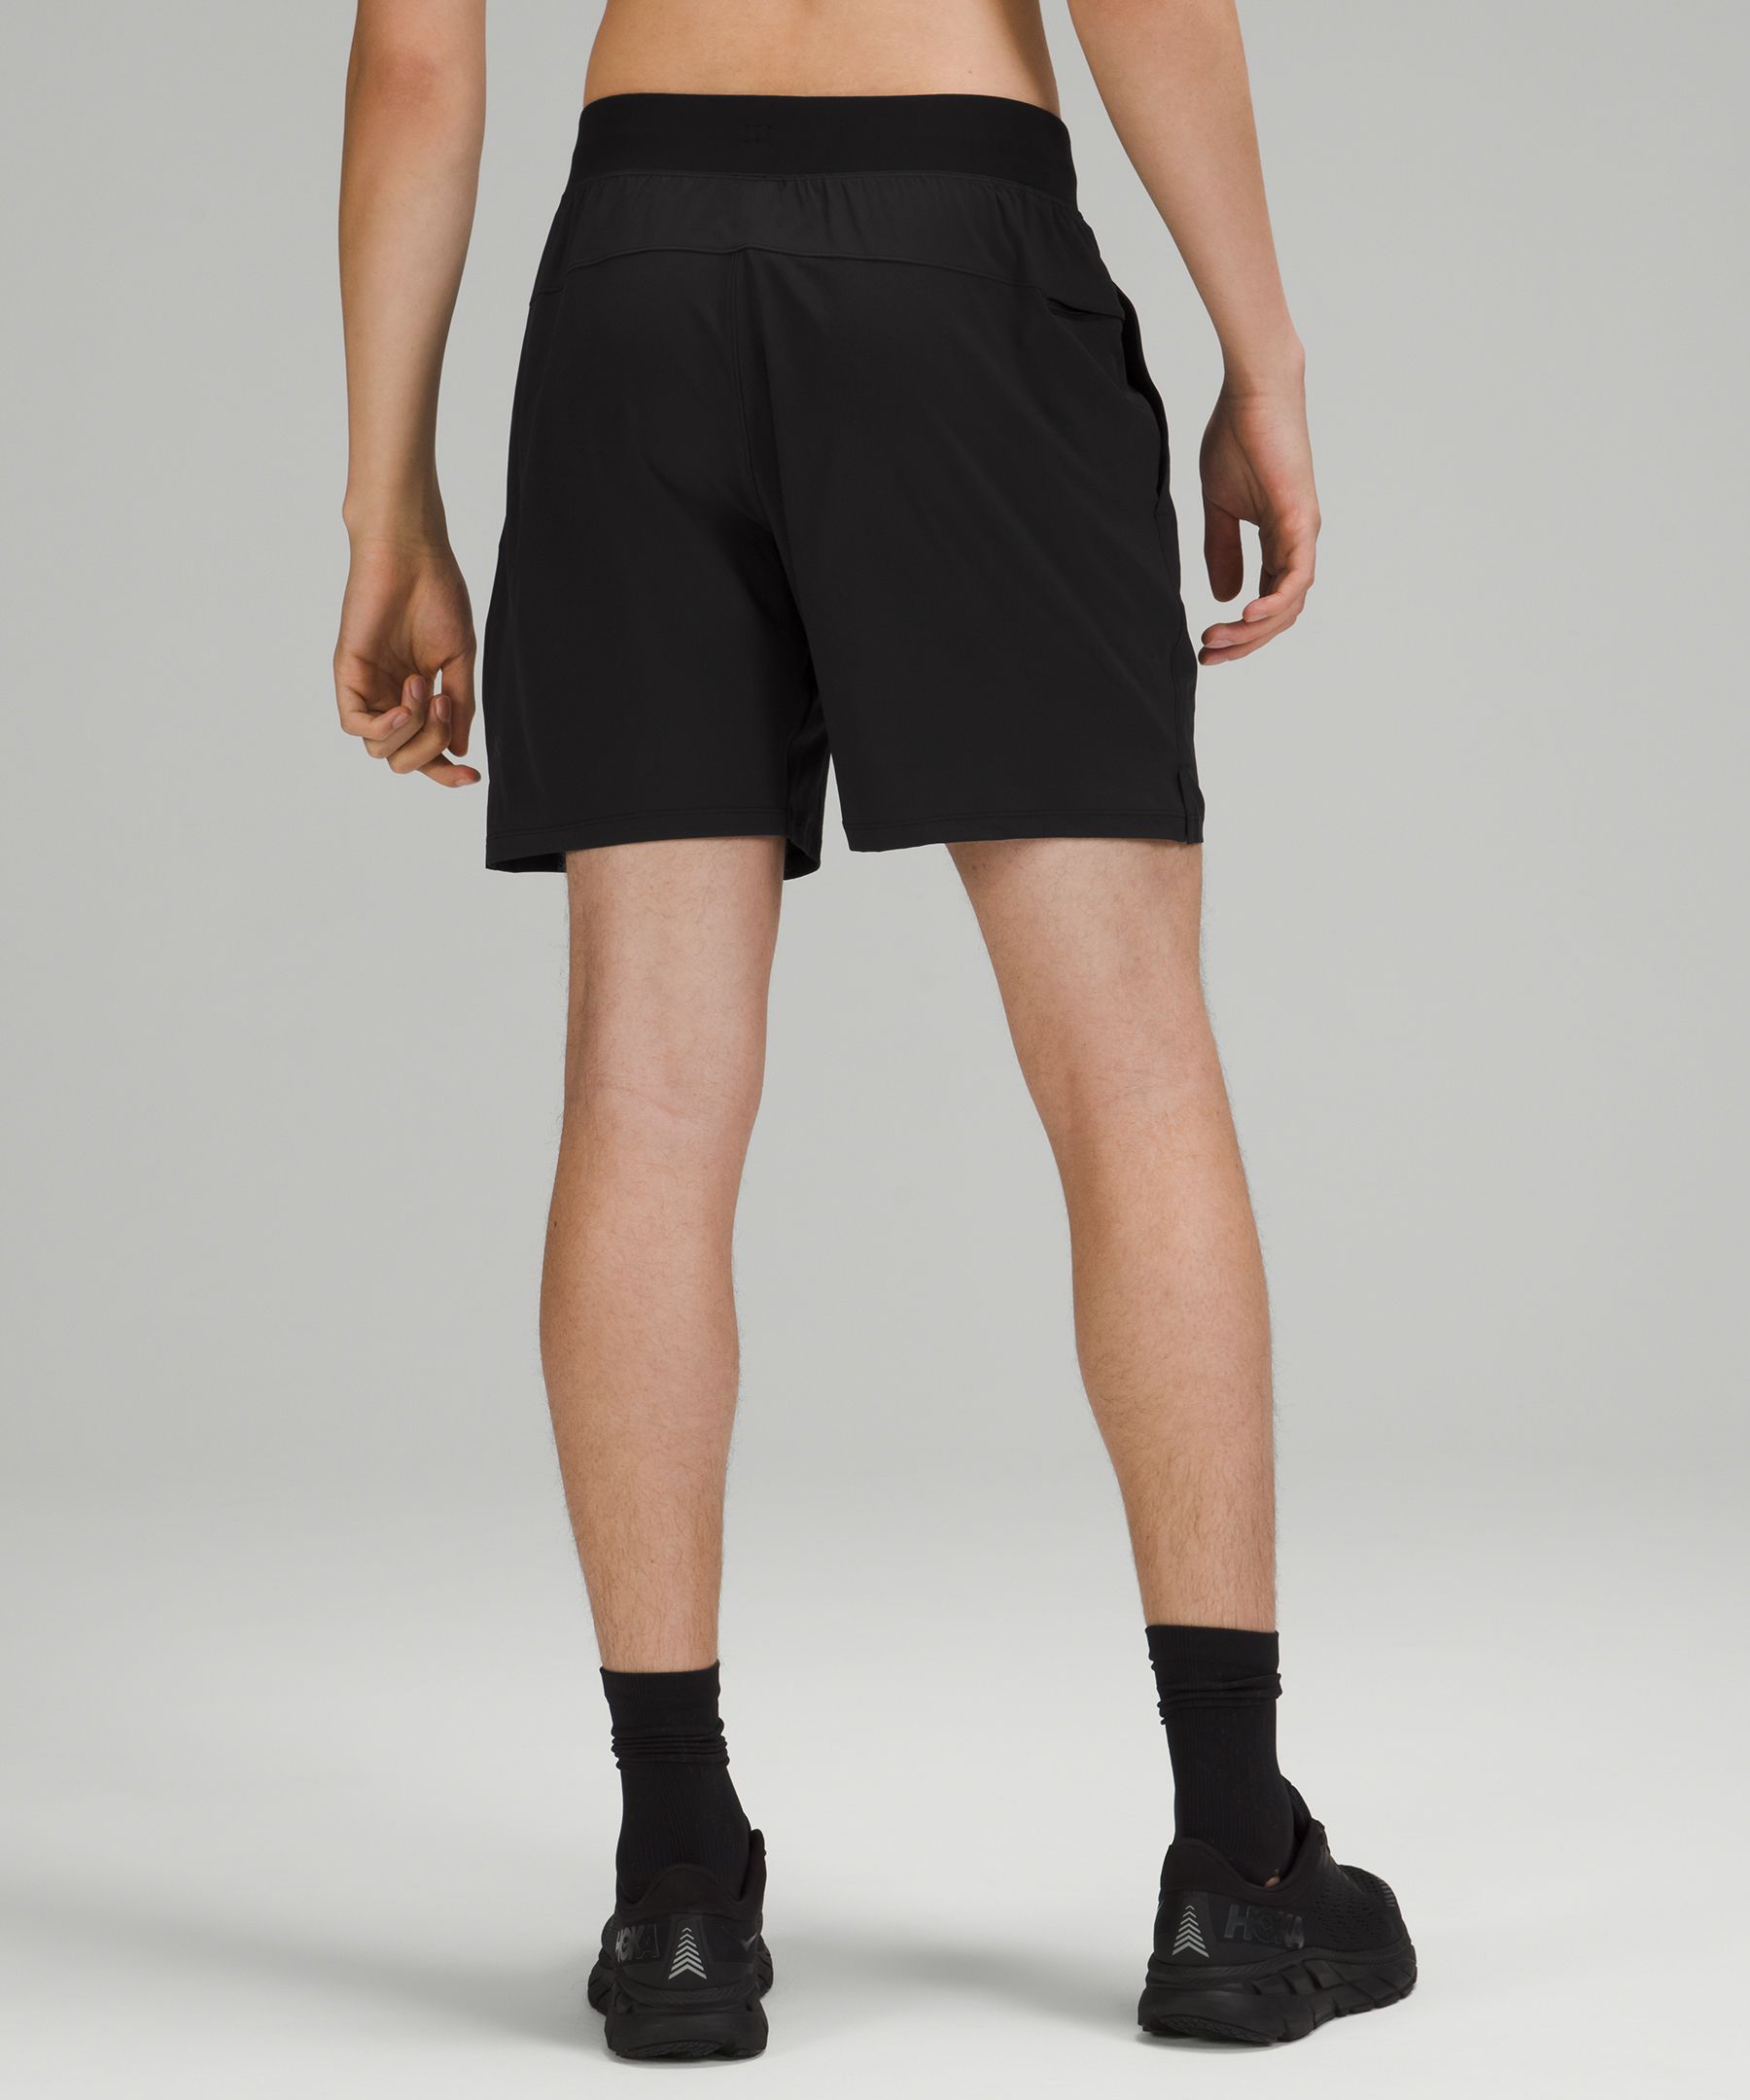 best men's lululemon shorts